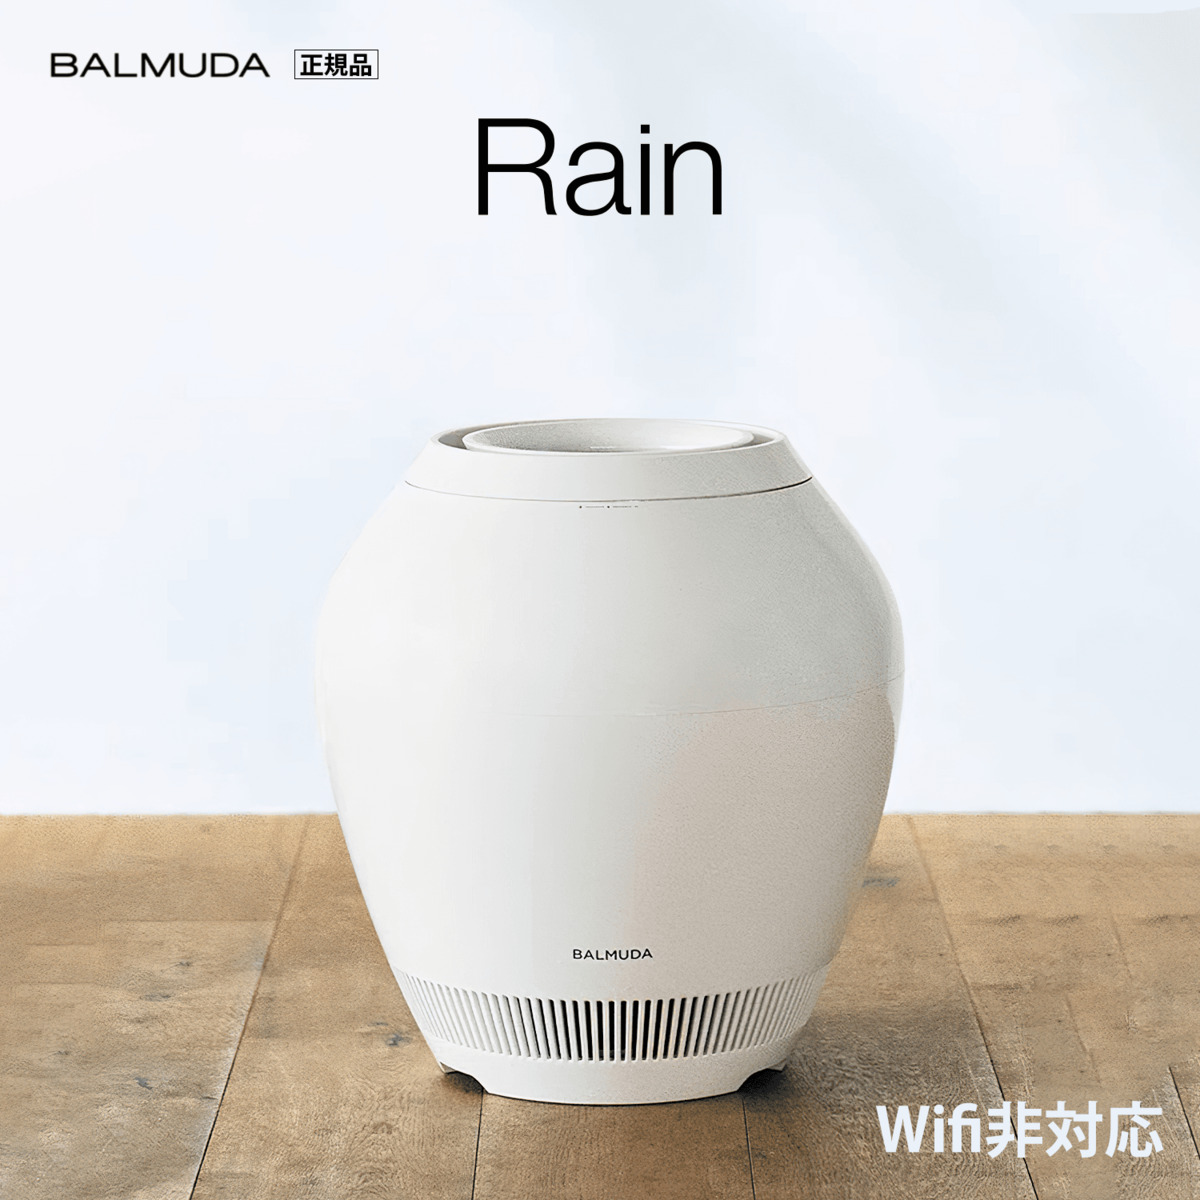 バルミューダ BALMUDA Rain Wi-Fi対応 省エネ加湿器